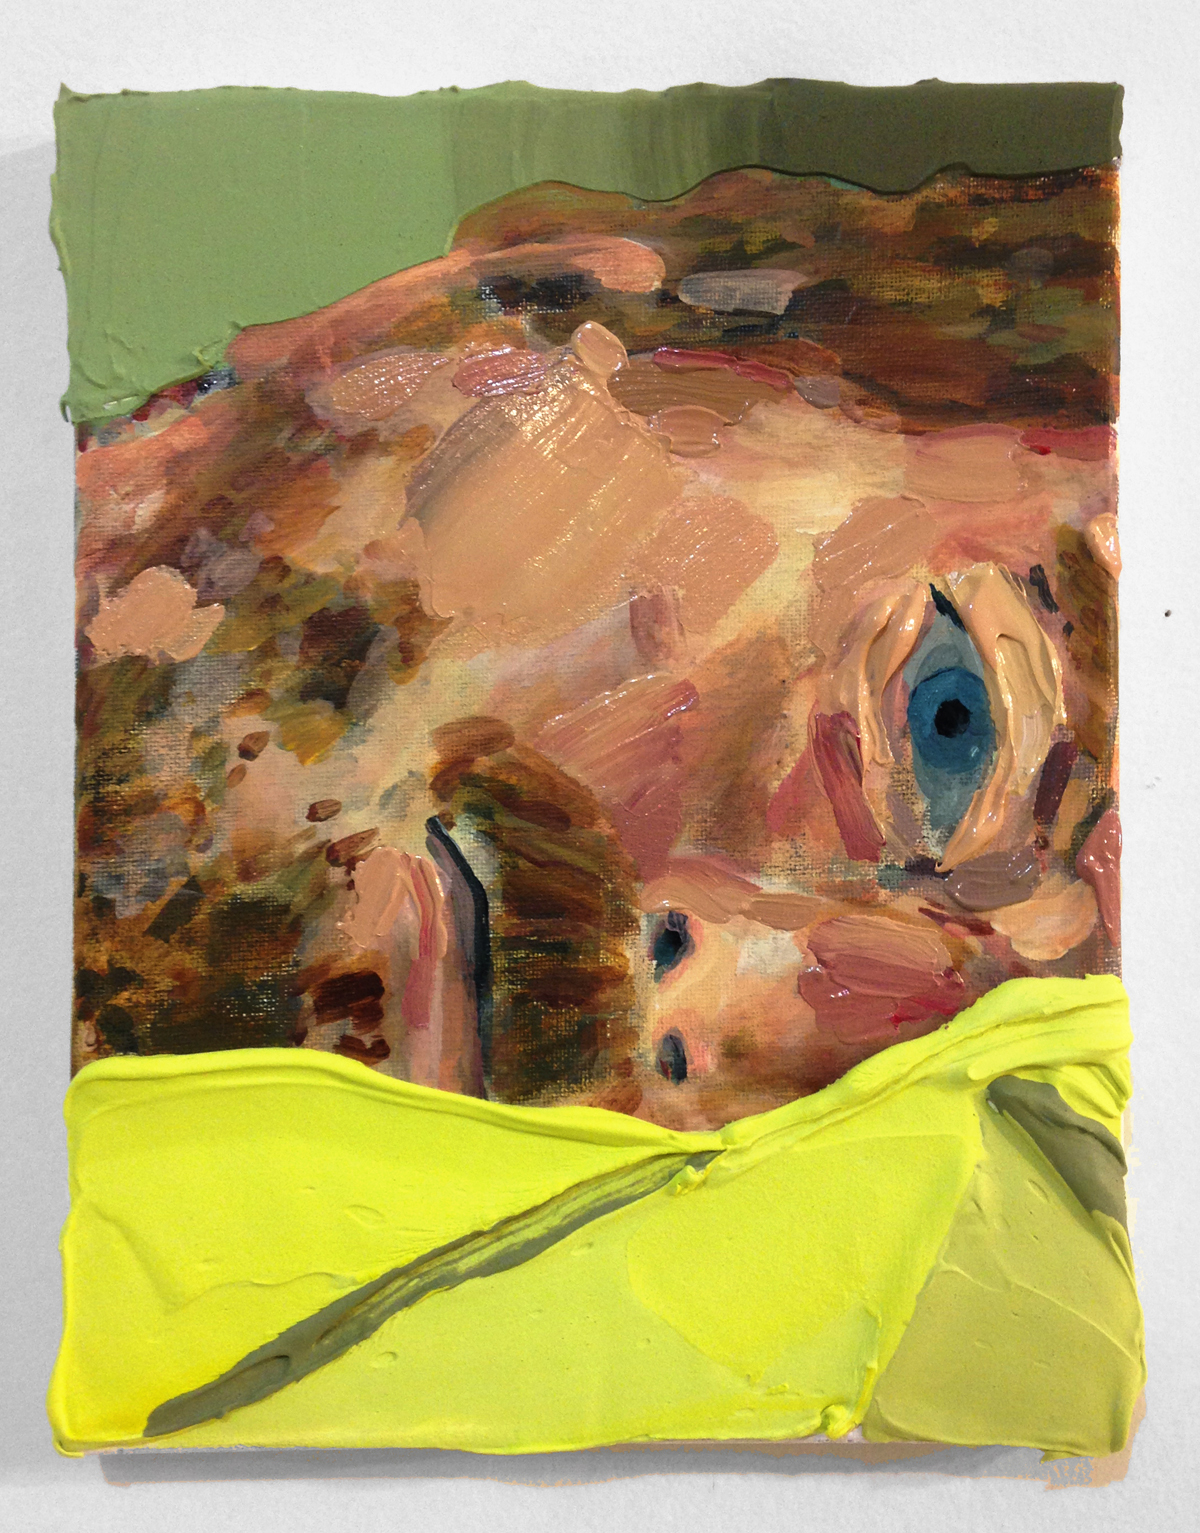 Hilary Doyle, Half-awake, 2016 Acrylic on canvas, 8 x 10"